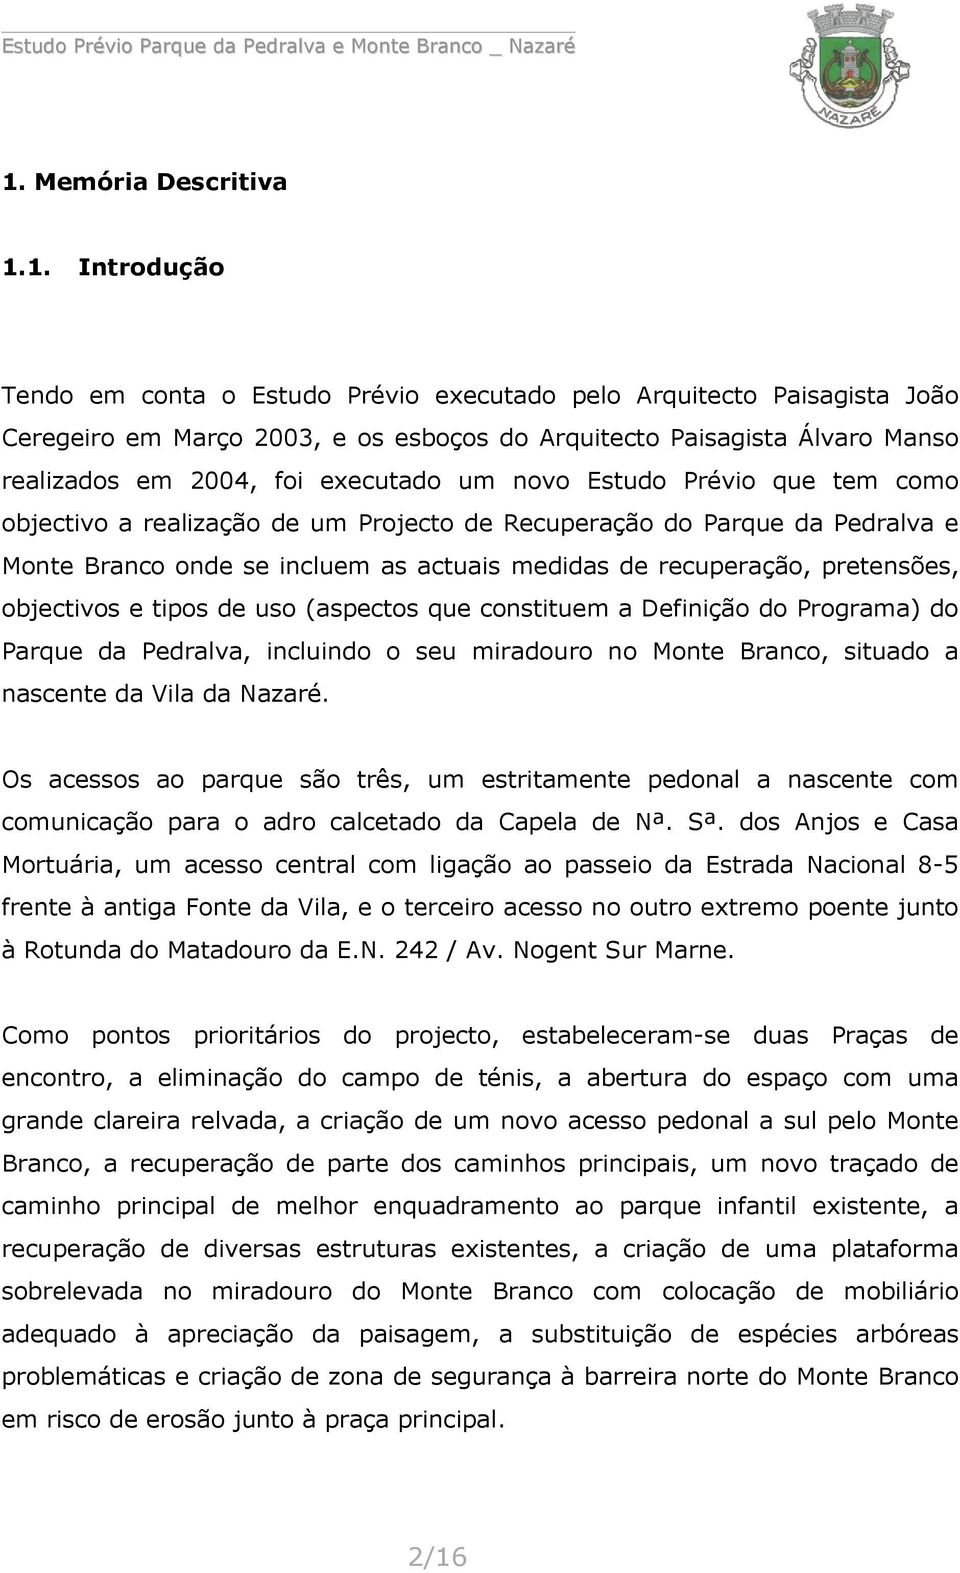 pretensões, objectivos e tipos de uso (aspectos que constituem a Definição do Programa) do Parque da Pedralva, incluindo o seu miradouro no Monte Branco, situado a nascente da Vila da Nazaré.